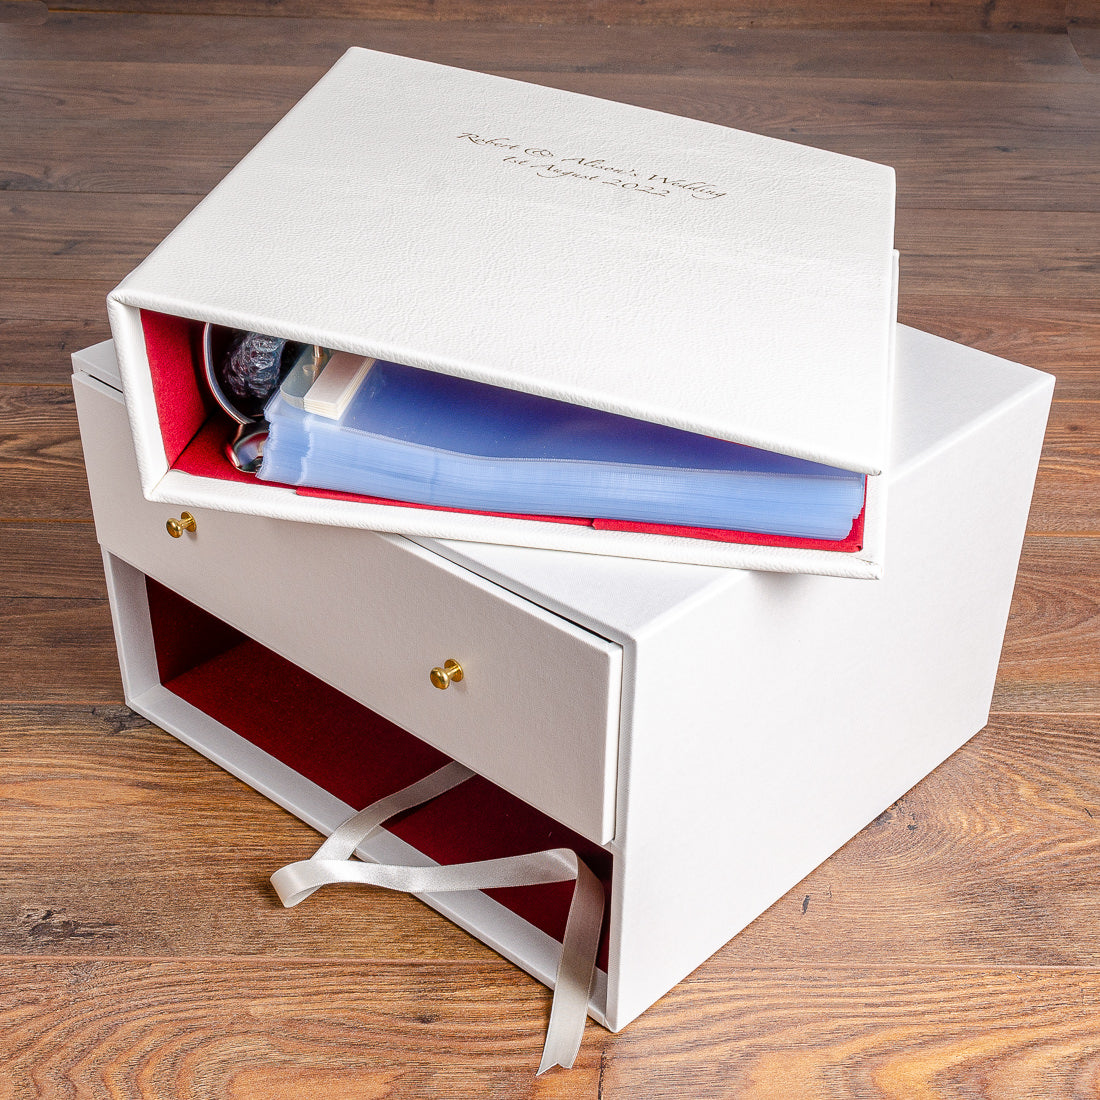 Slipcase keepsake box and personalised wedding albums